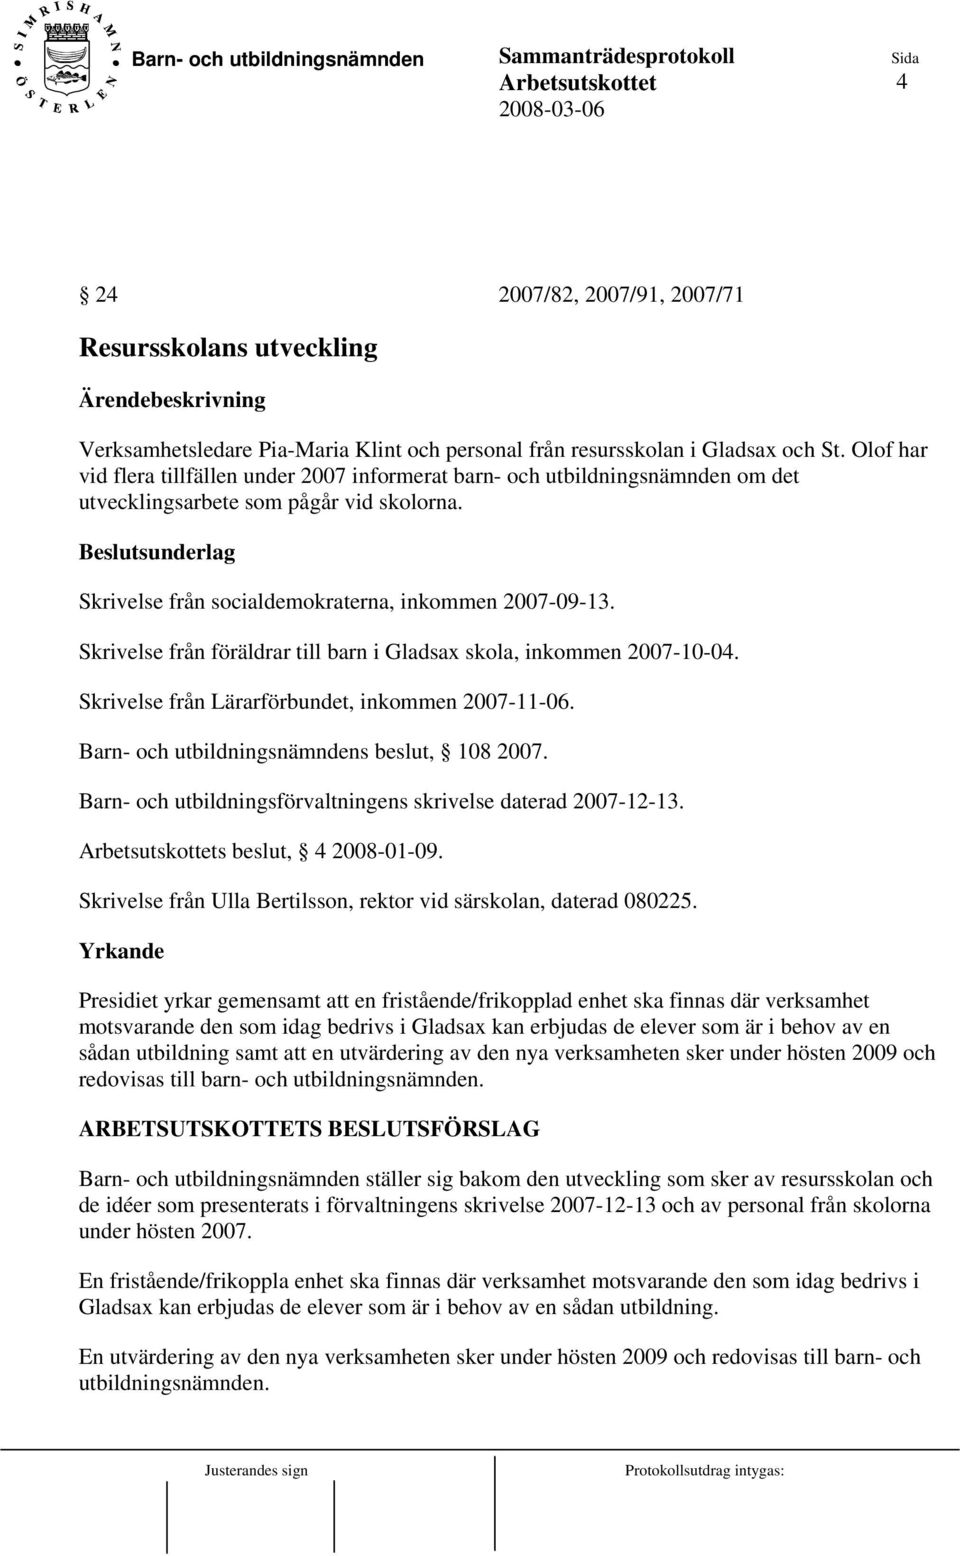 Skrivelse från föräldrar till barn i Gladsax skola, inkommen 2007-10-04. Skrivelse från Lärarförbundet, inkommen 2007-11-06. Barn- och utbildningsnämndens beslut, 108 2007.